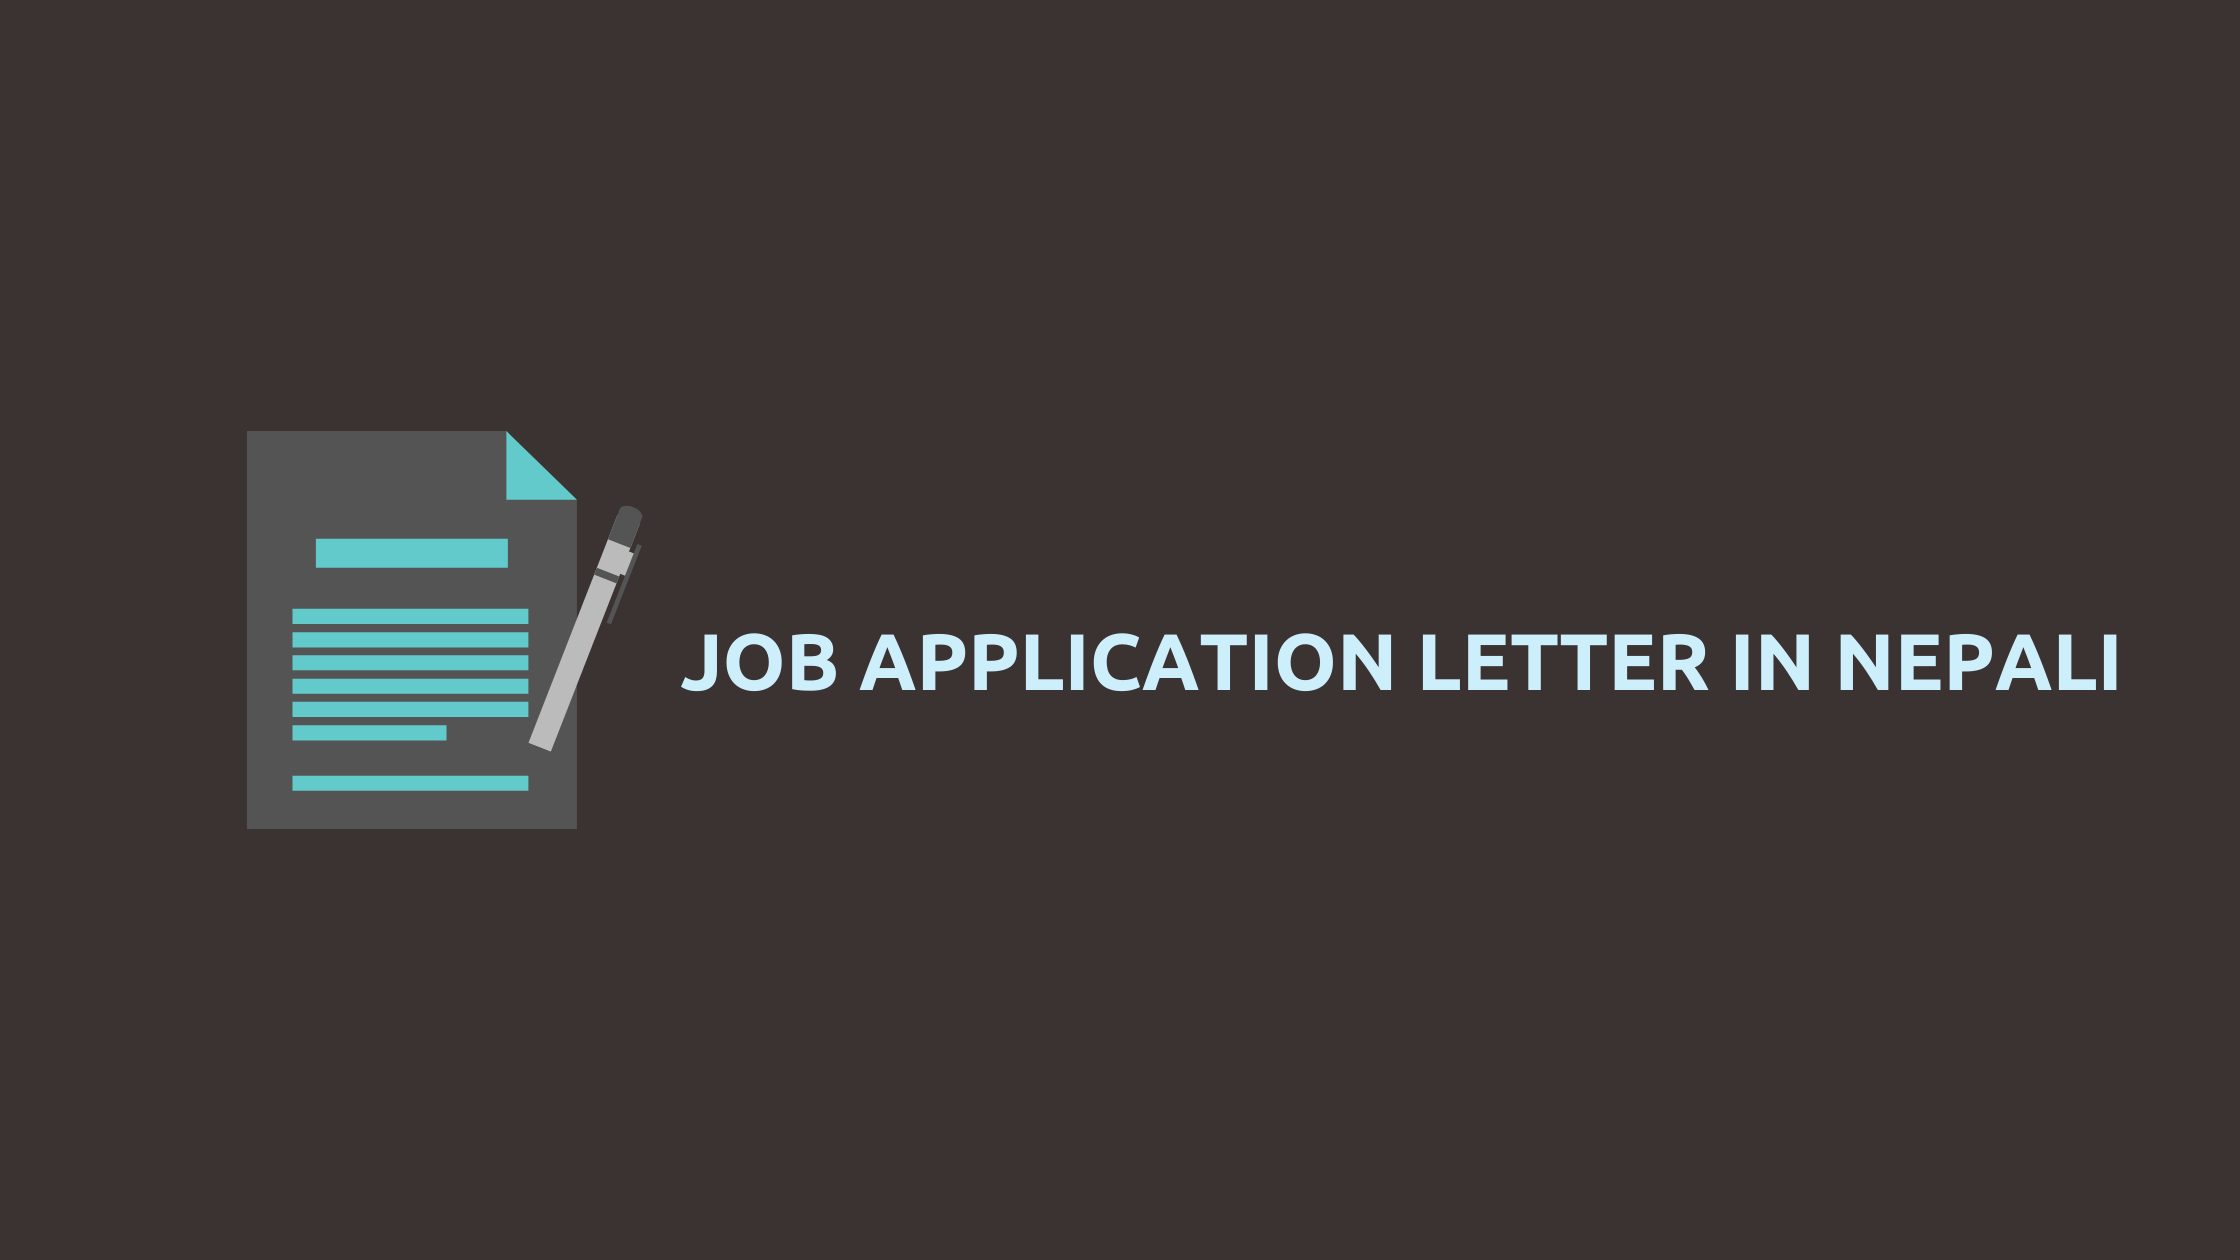 Job Application Letter in Nepali